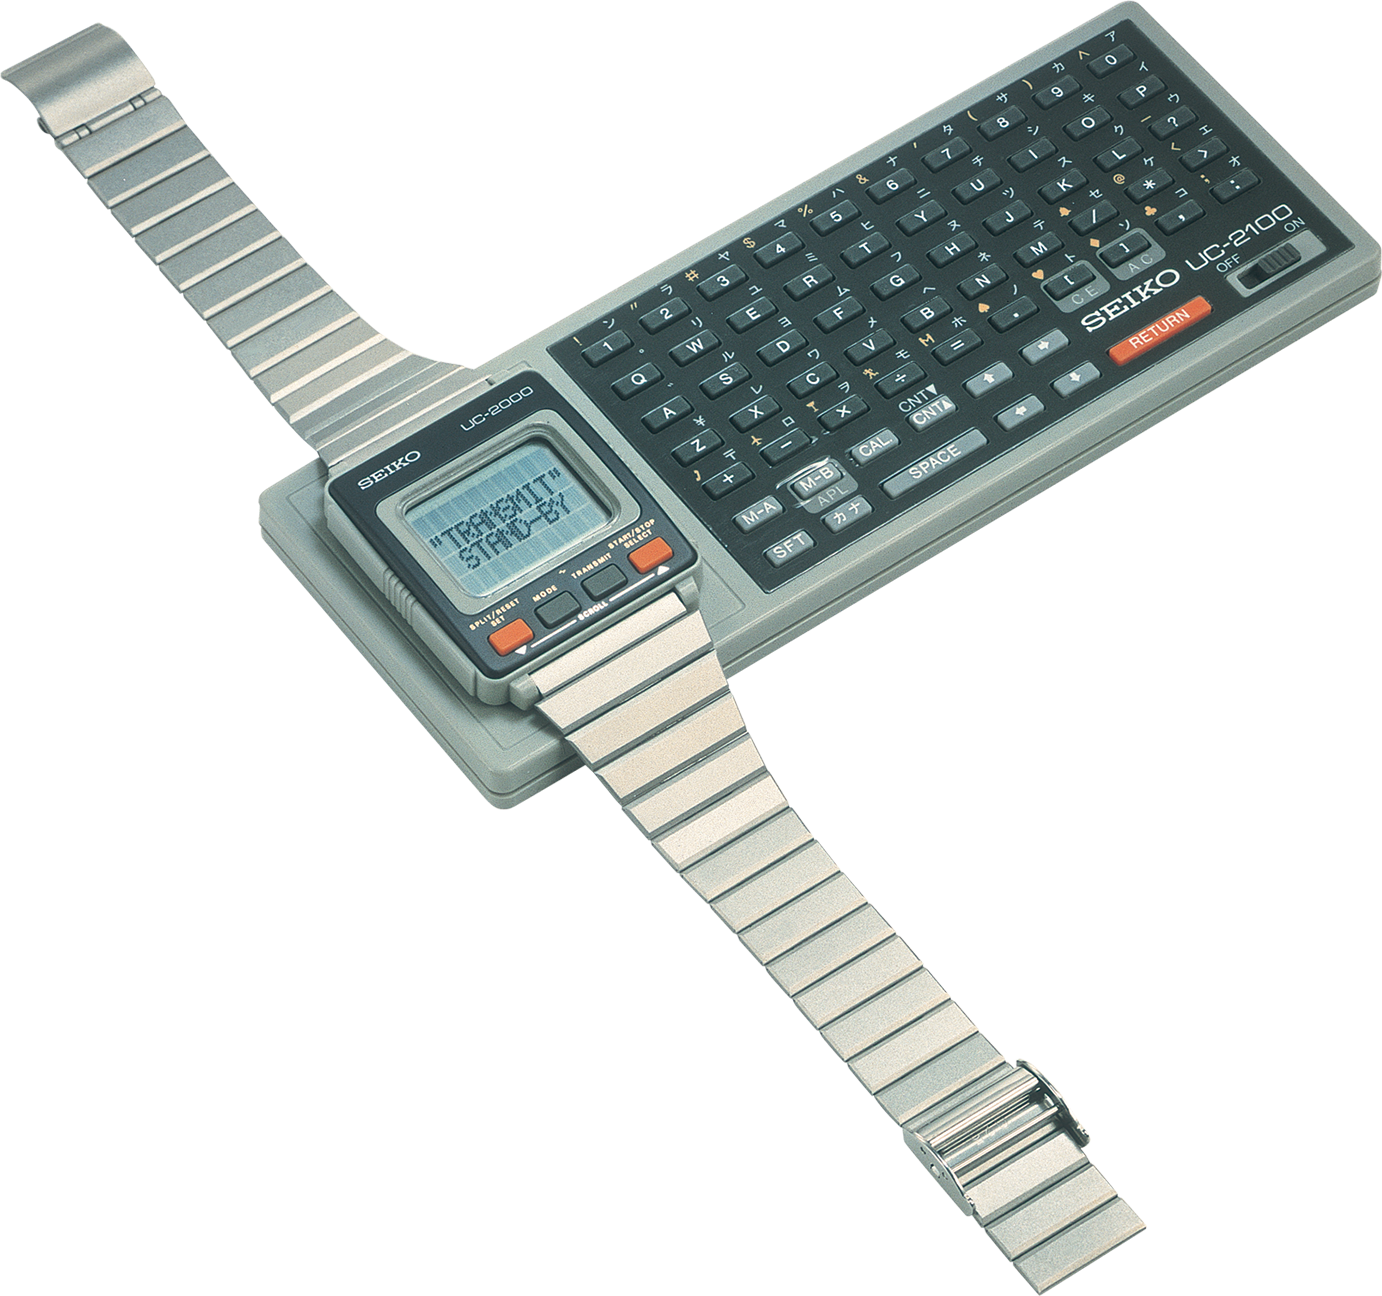 1984年 リストコンピューター「腕コン」 画像